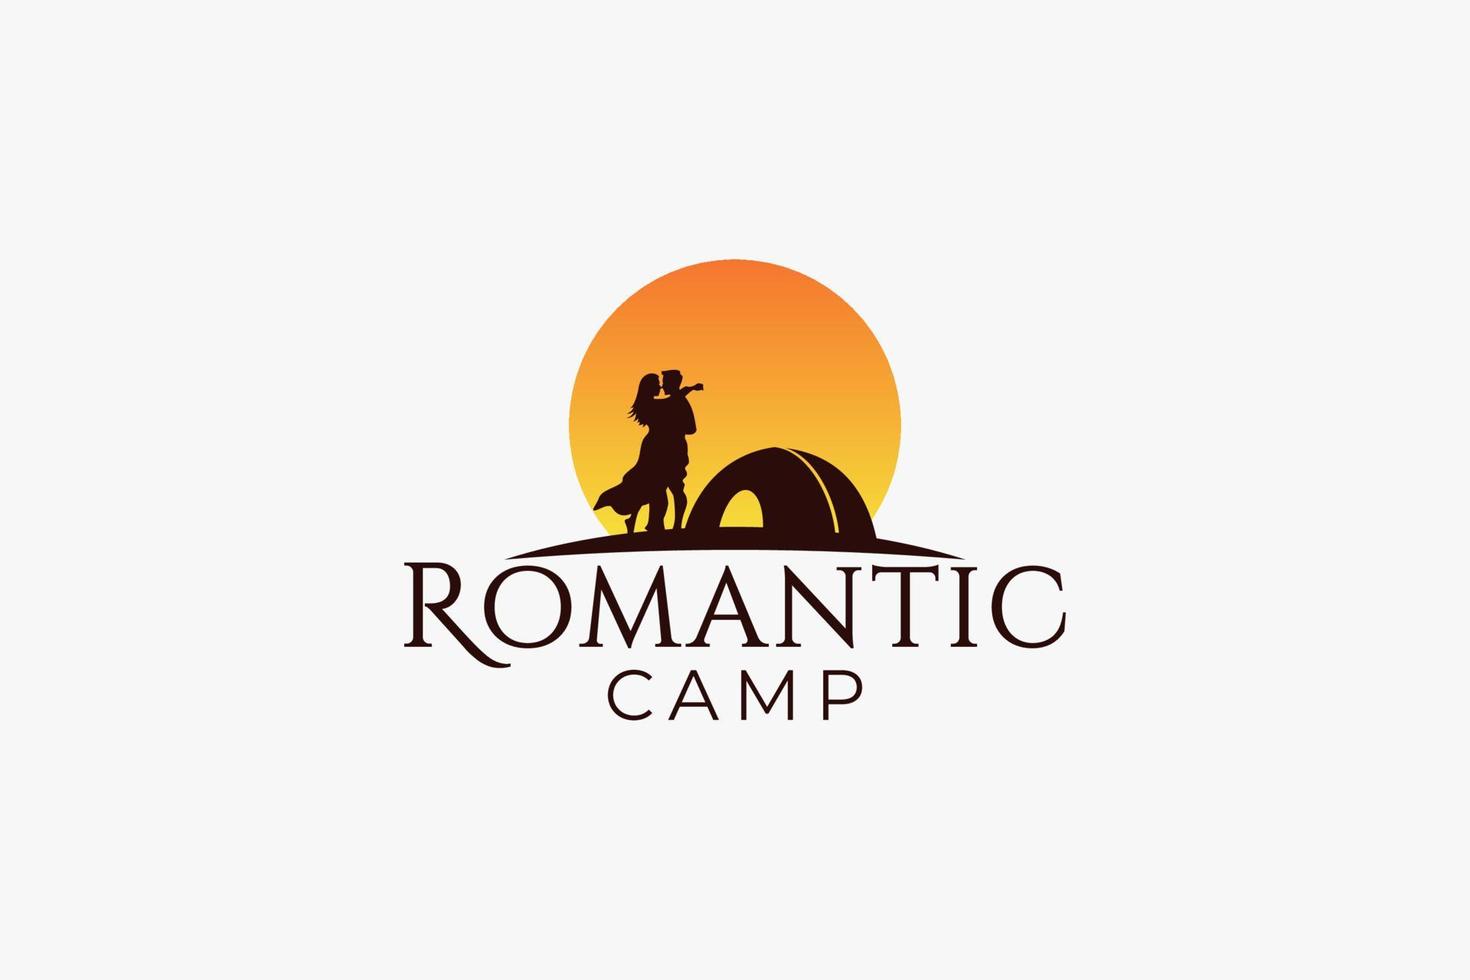 logo de camp romantique pour toute entreprise, en particulier pour les activités de plein air, les vacances, les voyages, la lune de miel, les voyages, le sport, l'aventure, etc. vecteur